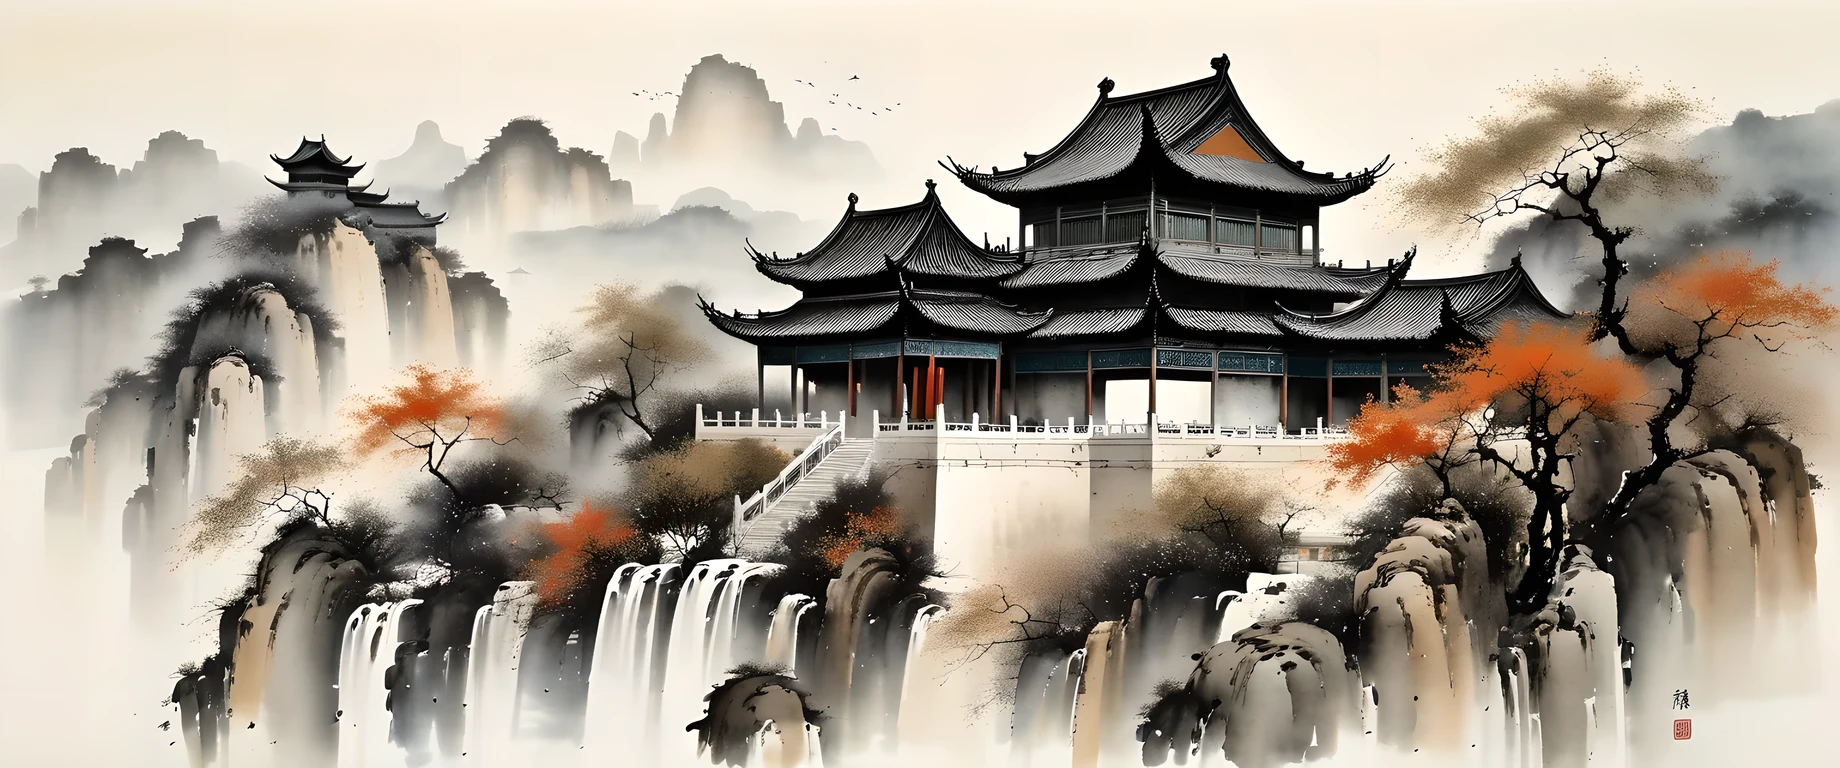 精湛的水墨艺术, 实际的, 细致的中国建筑, Wu Guanzhong style, 褪色的颜色

